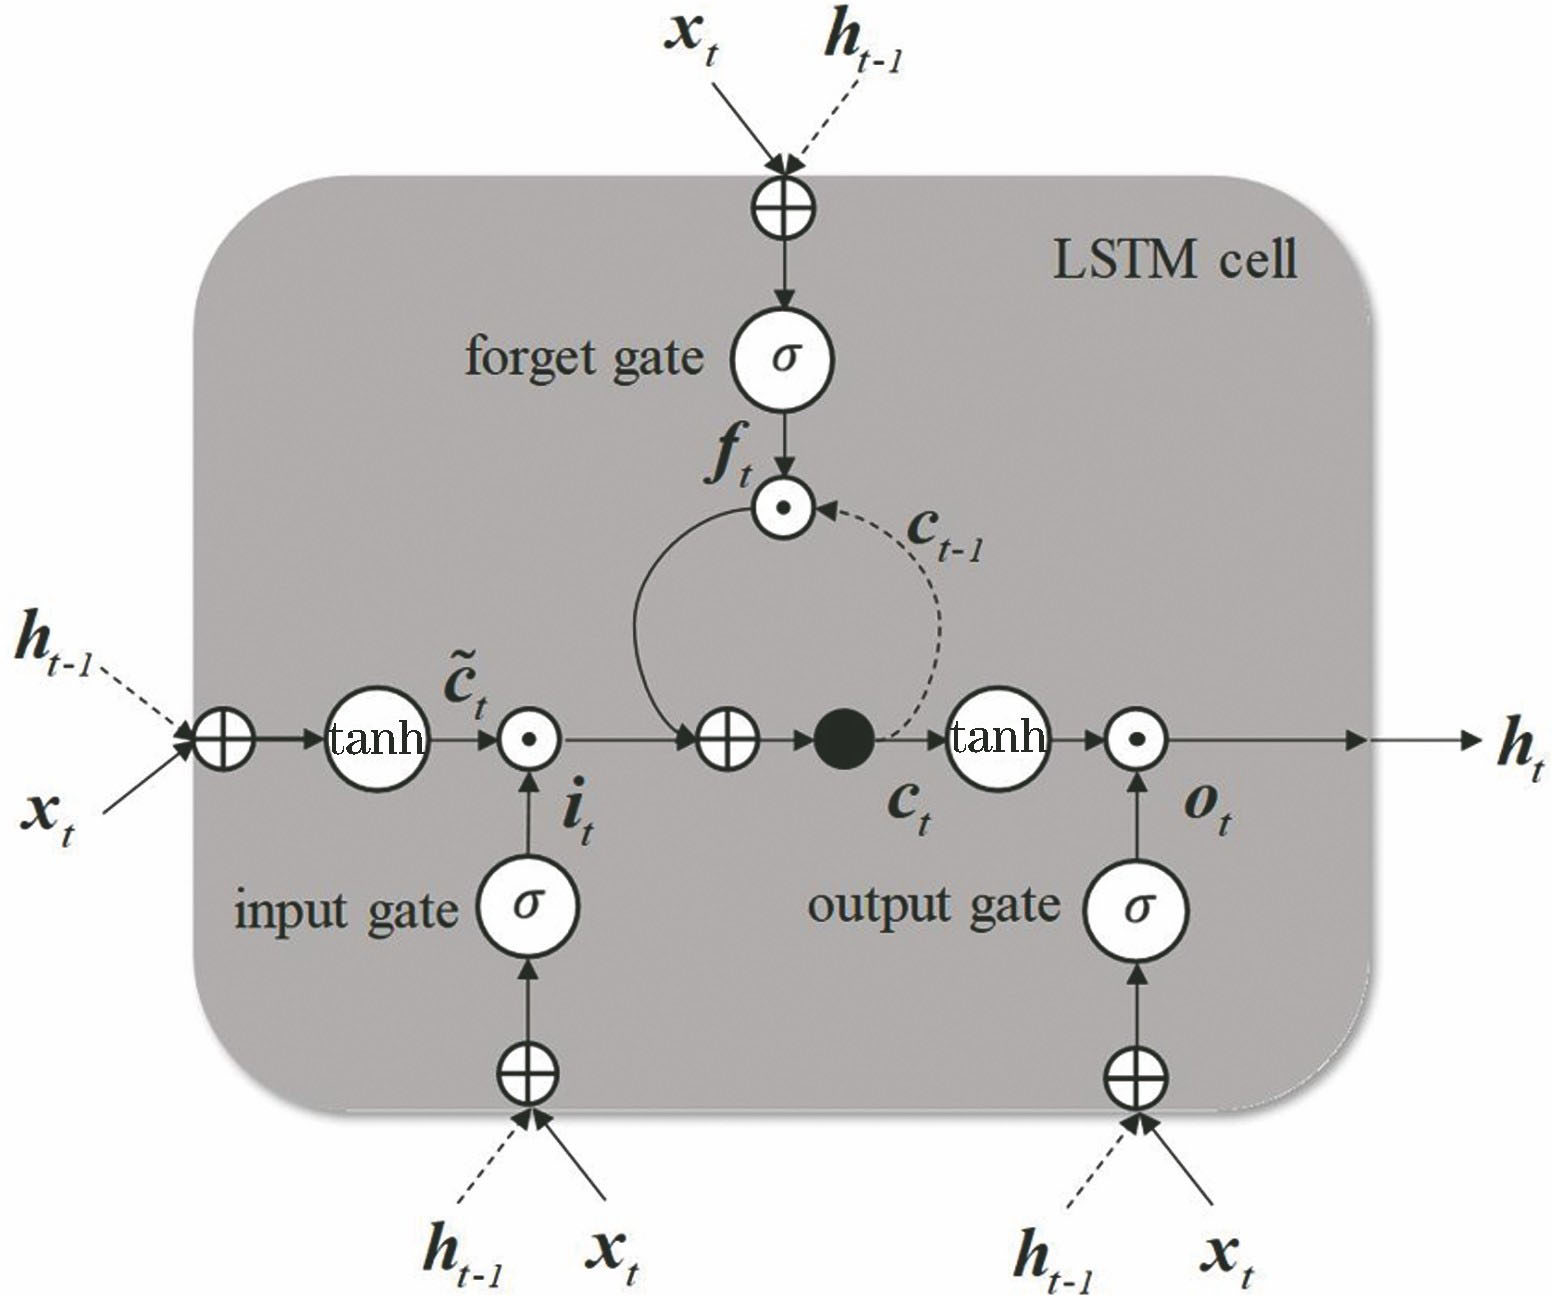 LSTM network unit